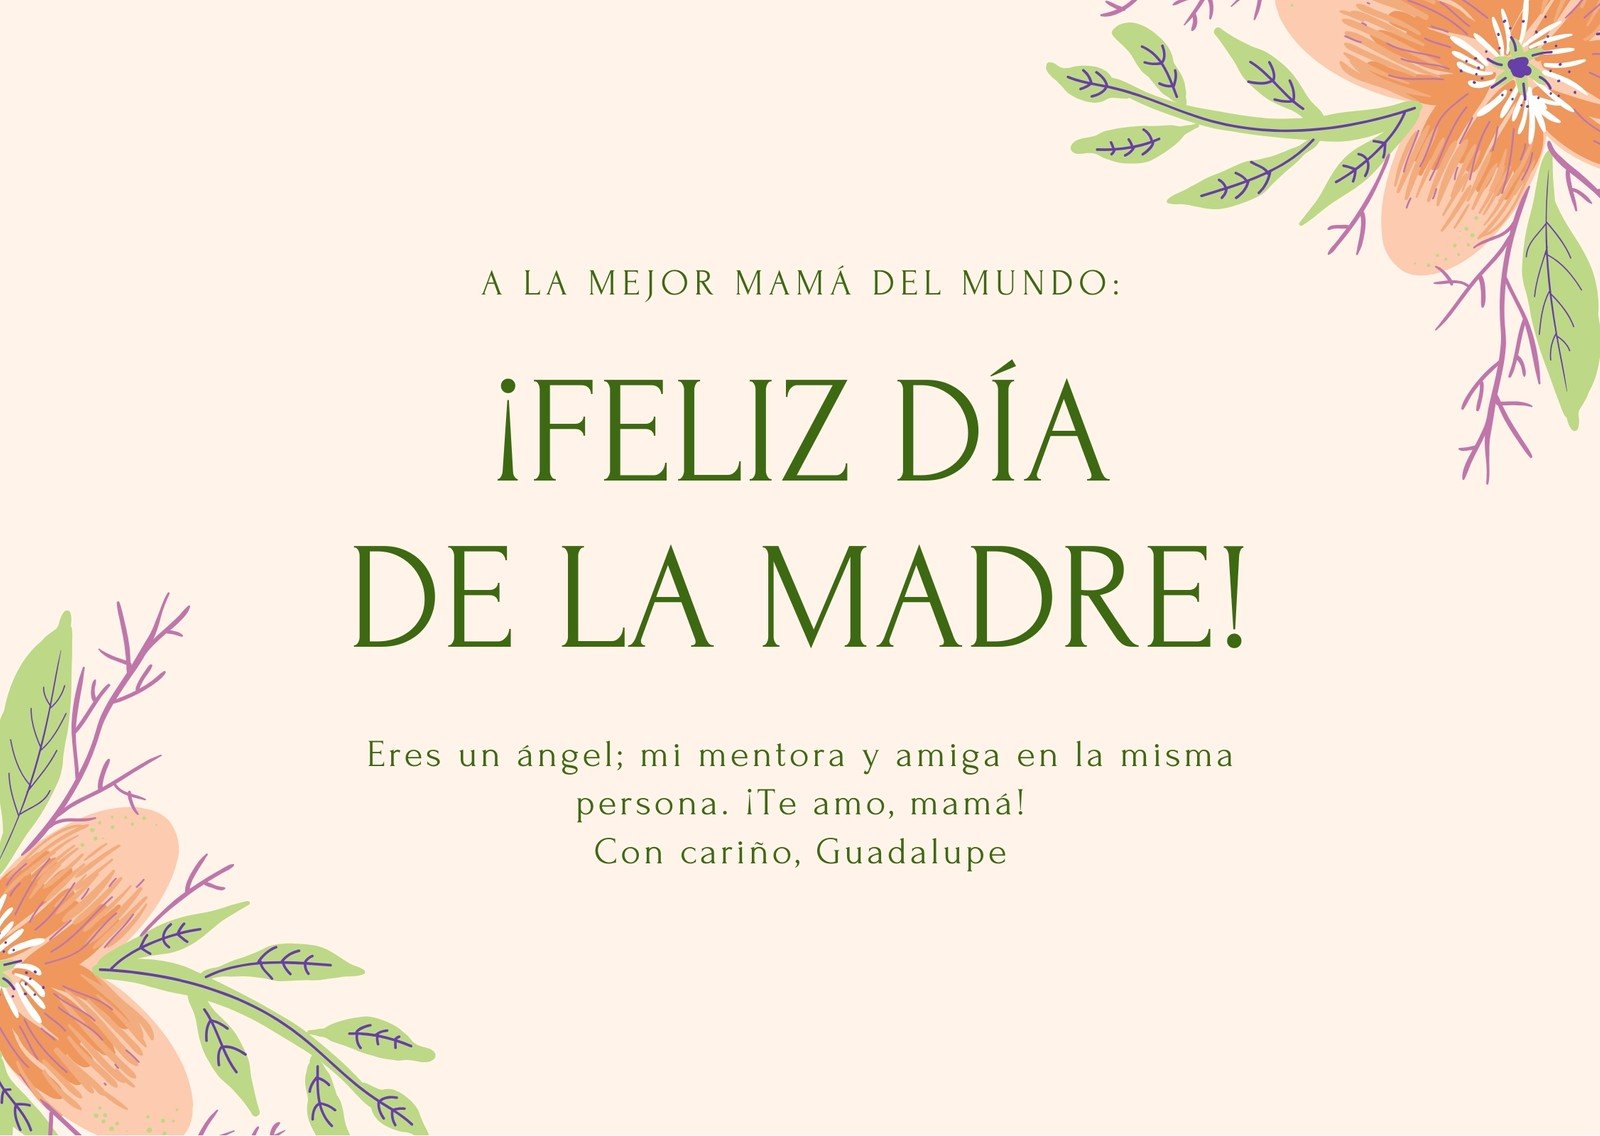 Vegetales Inmersión Abreviar Plantillas para tarjetas del Día de las Madres gratis | Canva